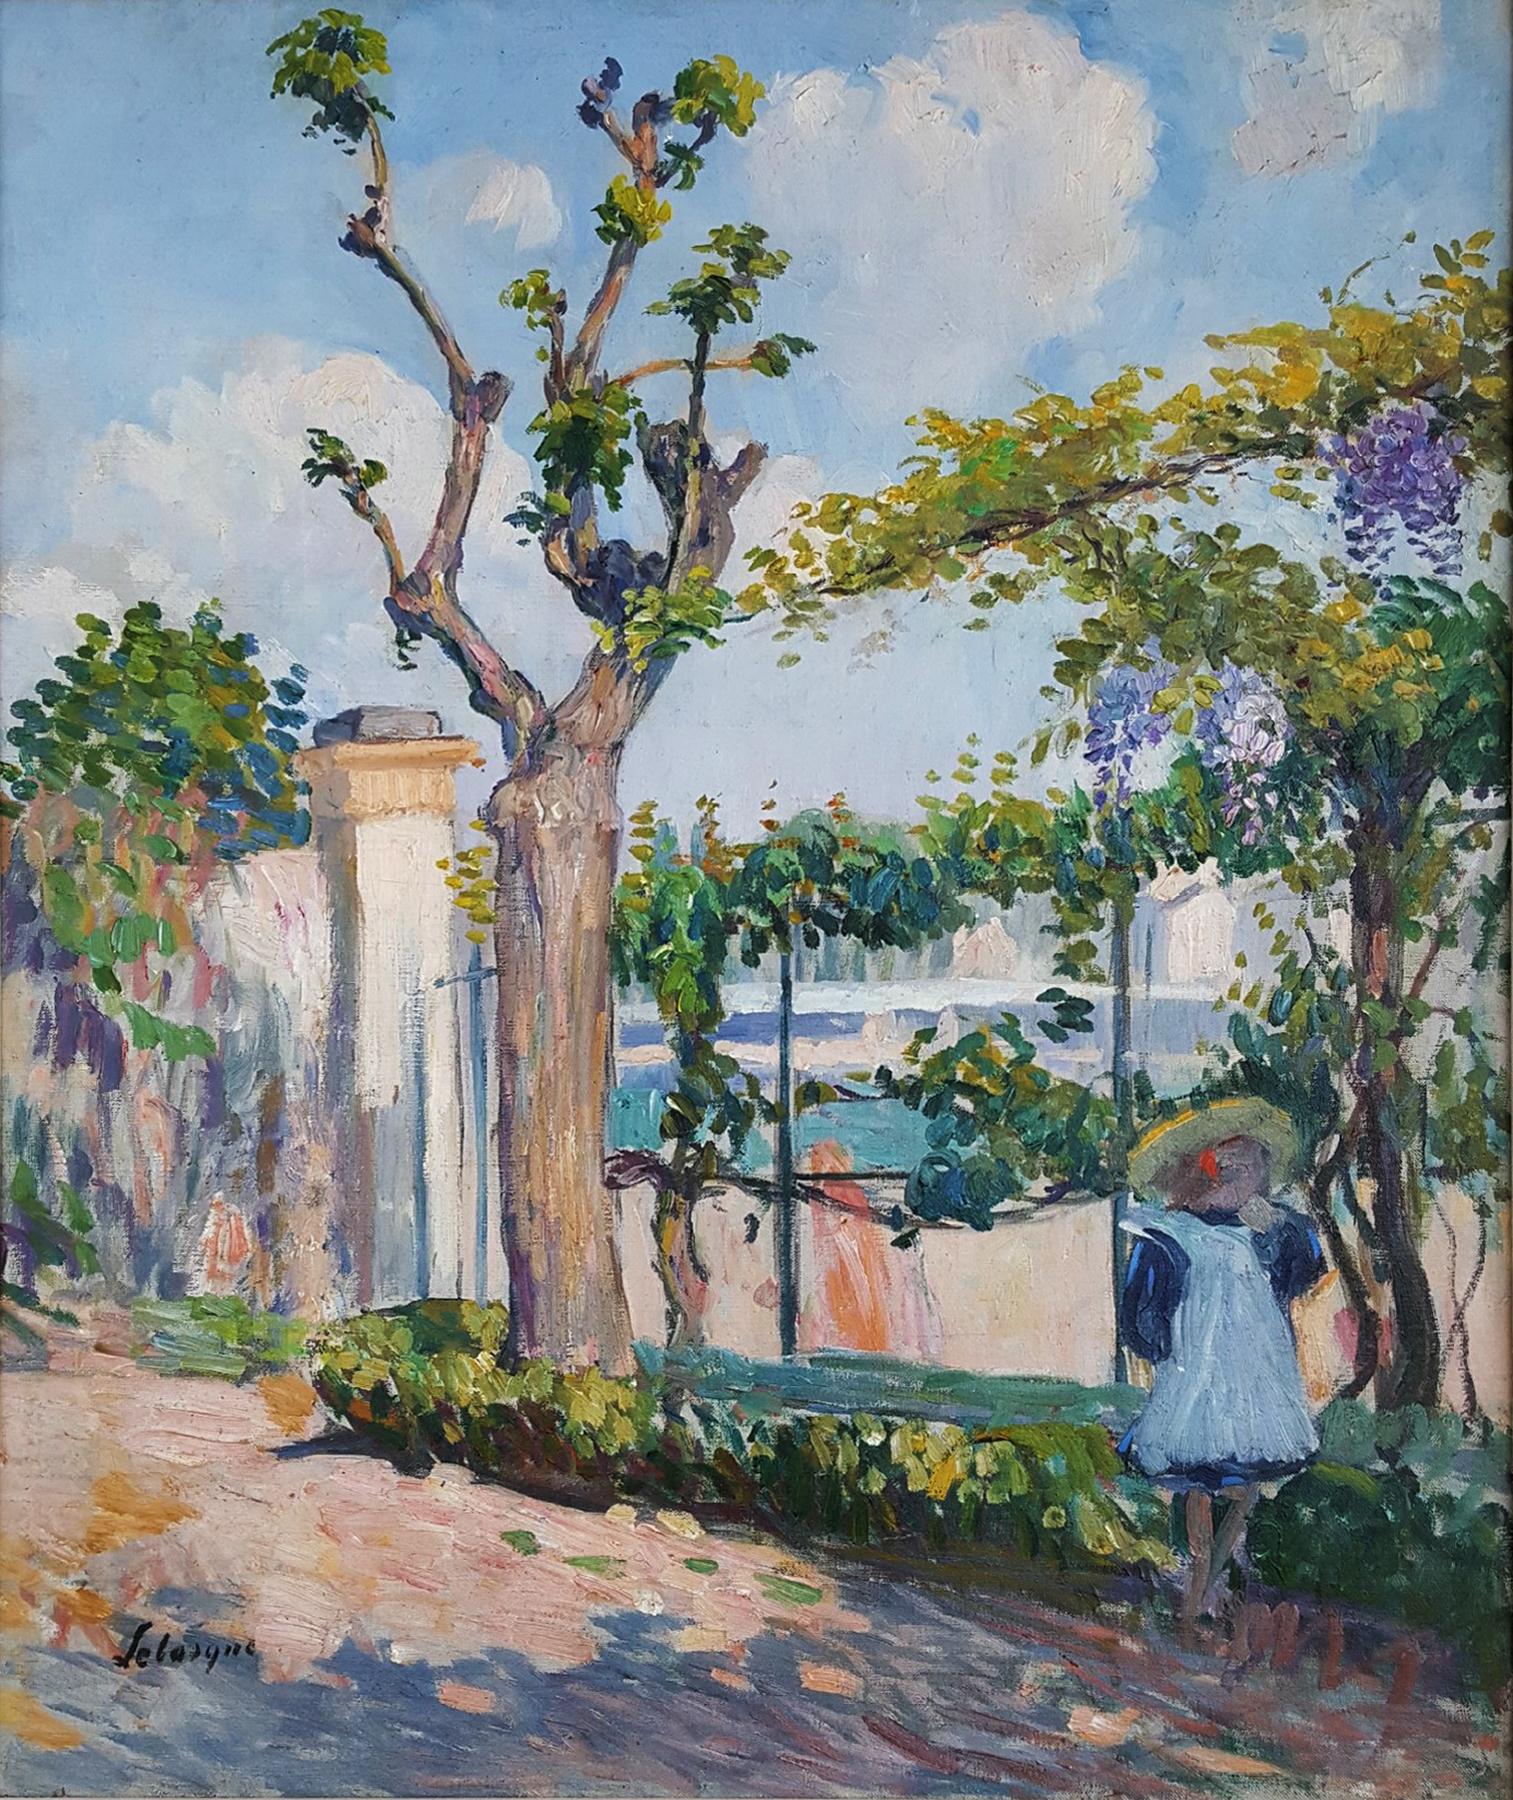 Jardin de Lagny - Garten mit jungem Mädchen  Postimpressionistischer Stil  – Painting von Henri Lebasque